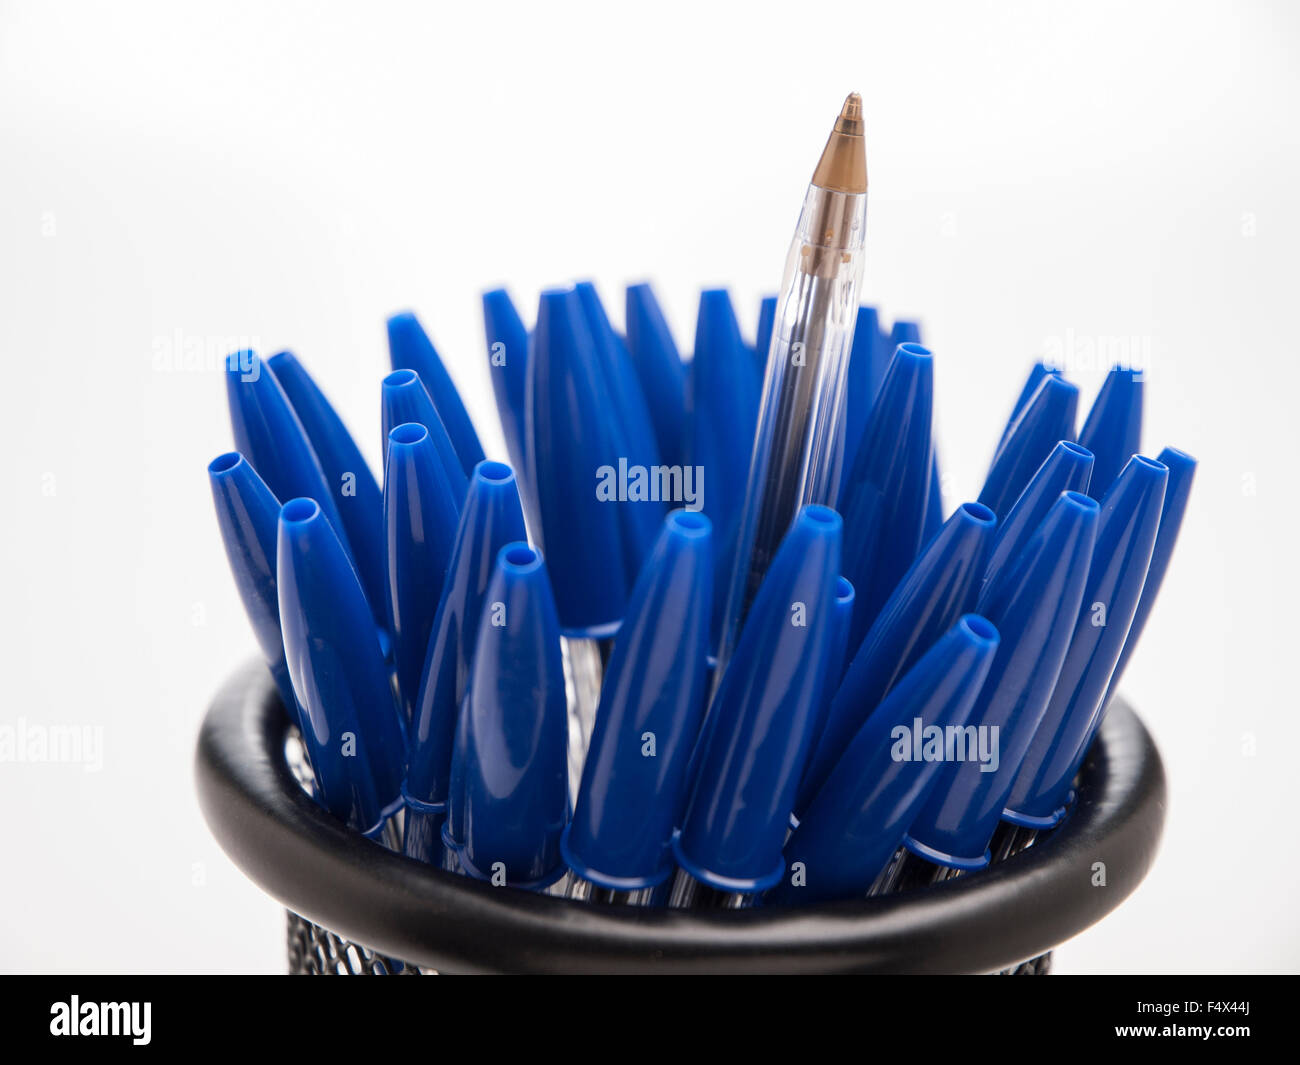 Bic cristal bleu plumes crayons Banque D'Images